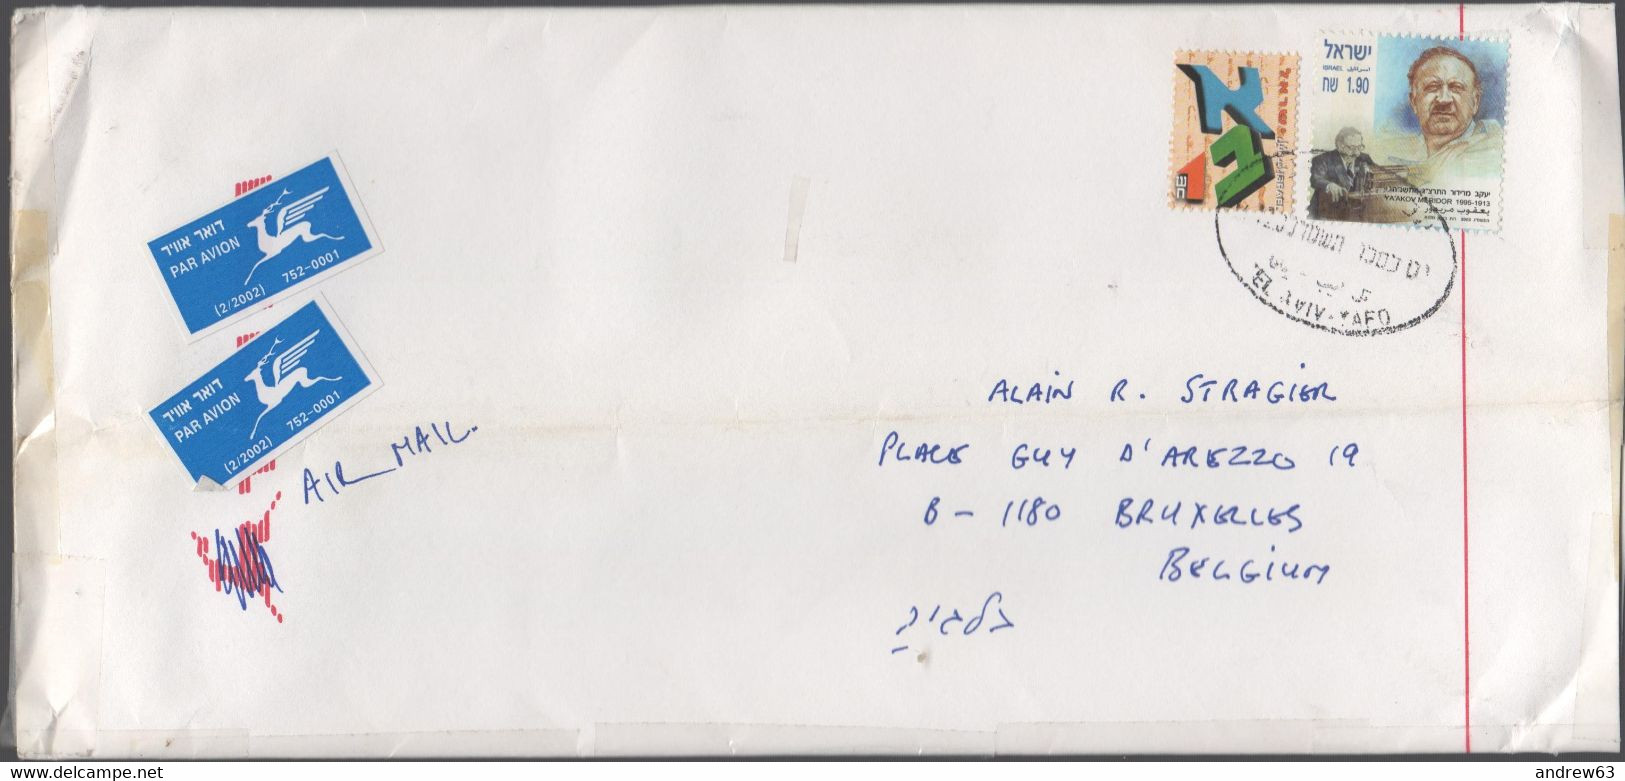 ISRAELE - ISRAEL - 20?? - 2 Stamps - Medium Envelope - Viaggiata Da Tel Aviv Per Brussels, Belgium - Covers & Documents